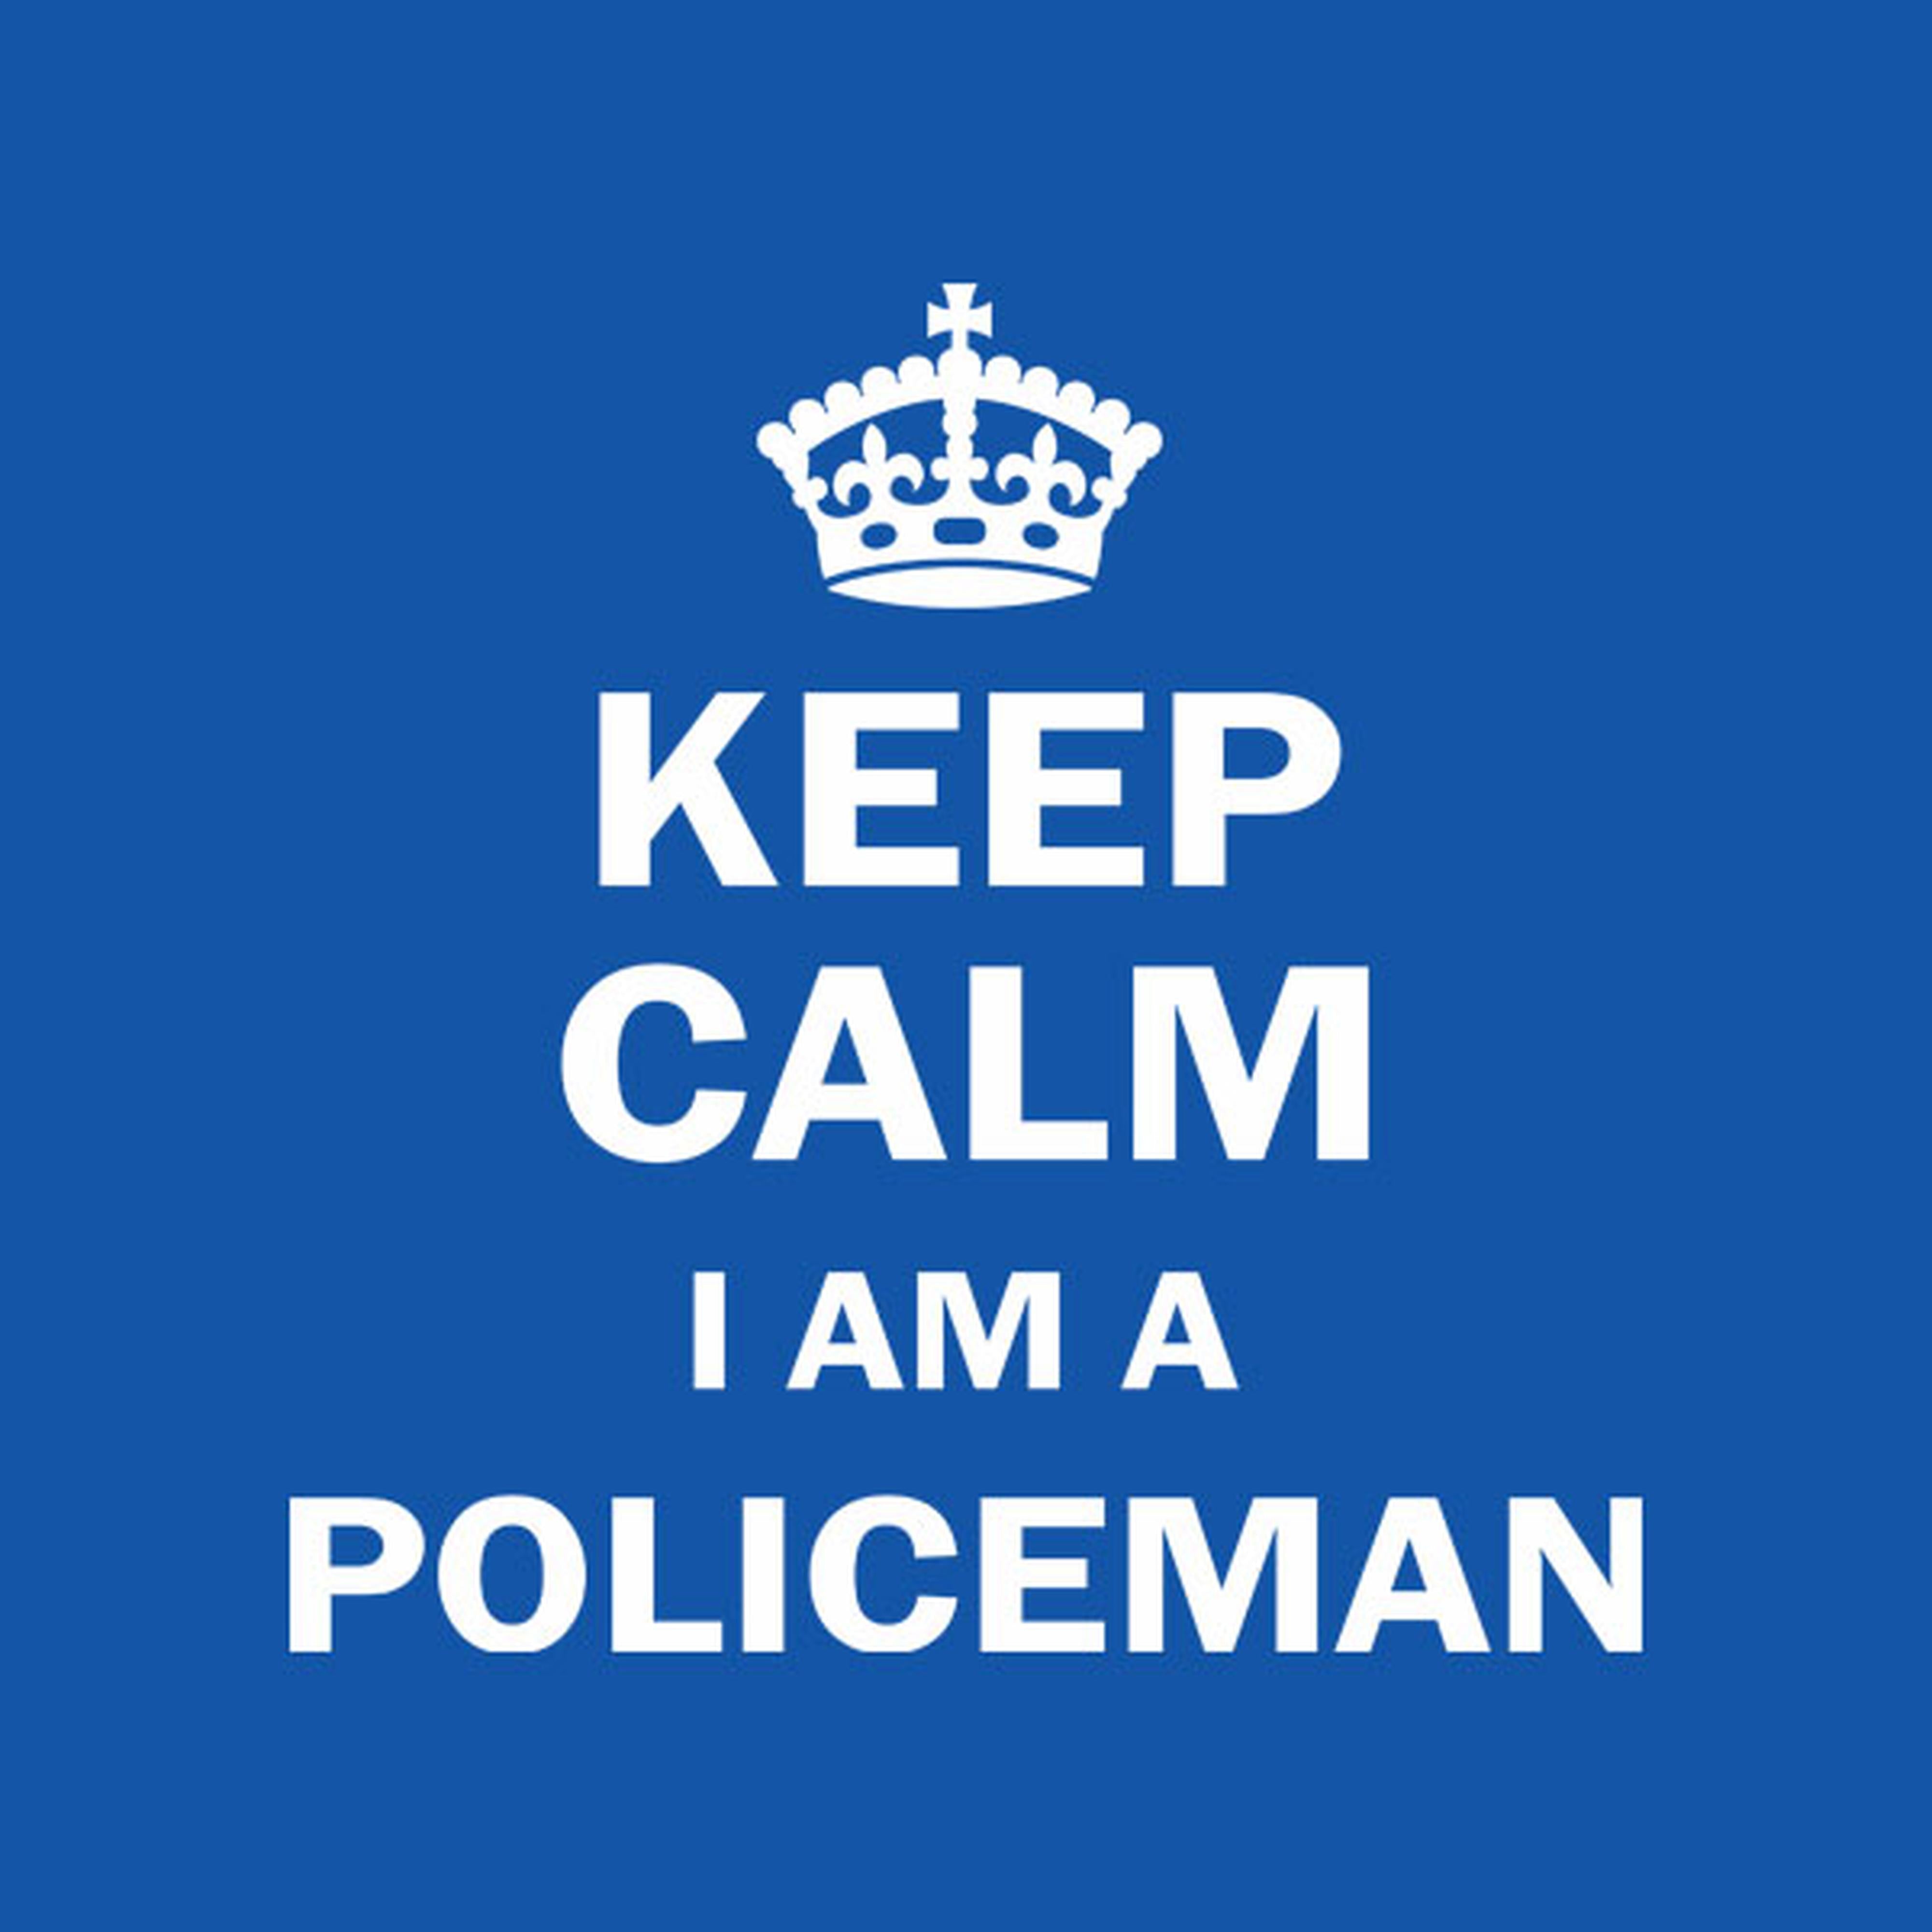 Keep calm I am a policeman - T-shirt